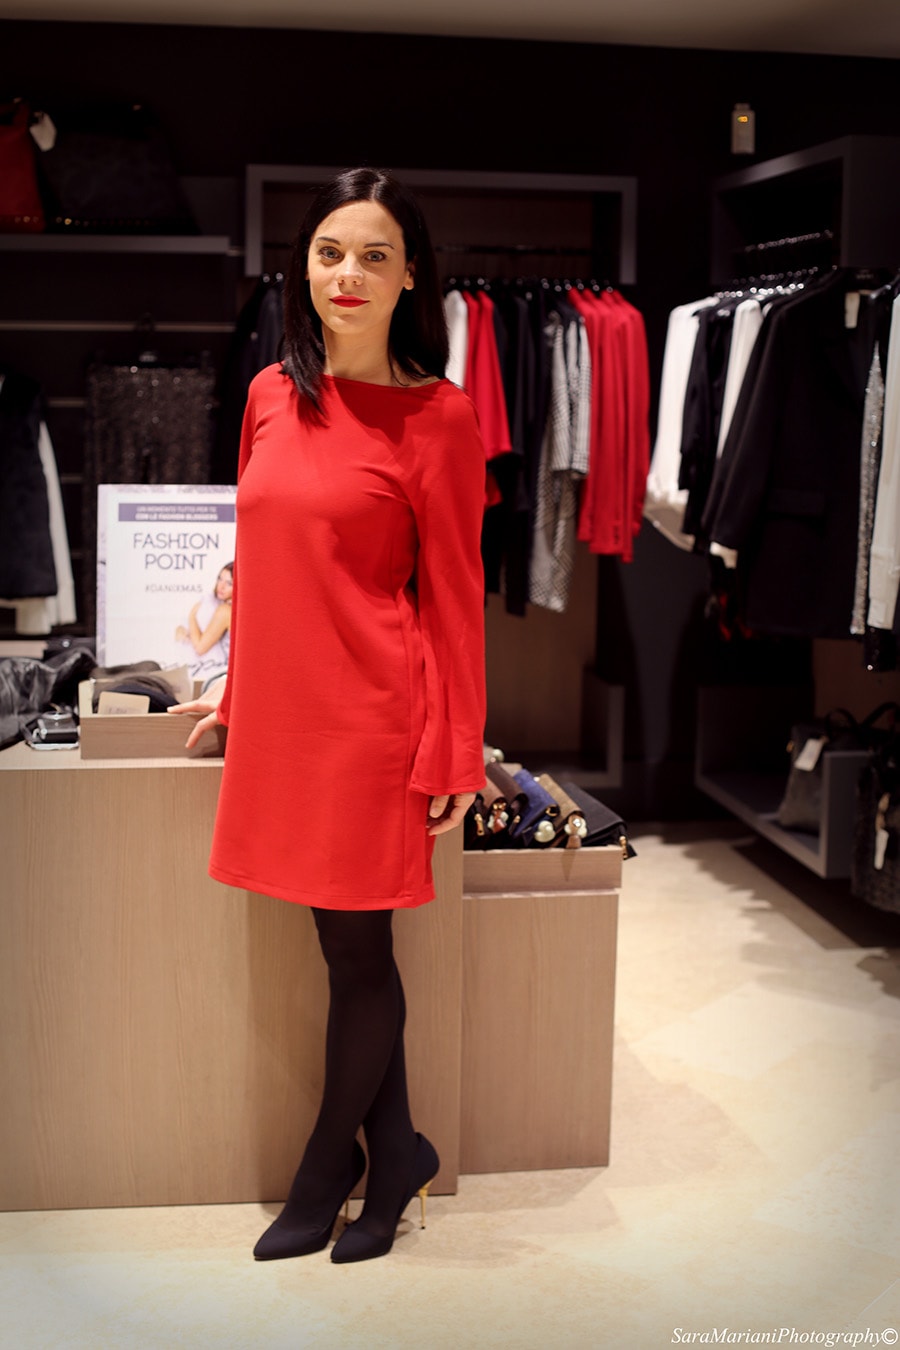 elena schiavon fashion blogger Dani Group Padova look Natale 2014 low cost